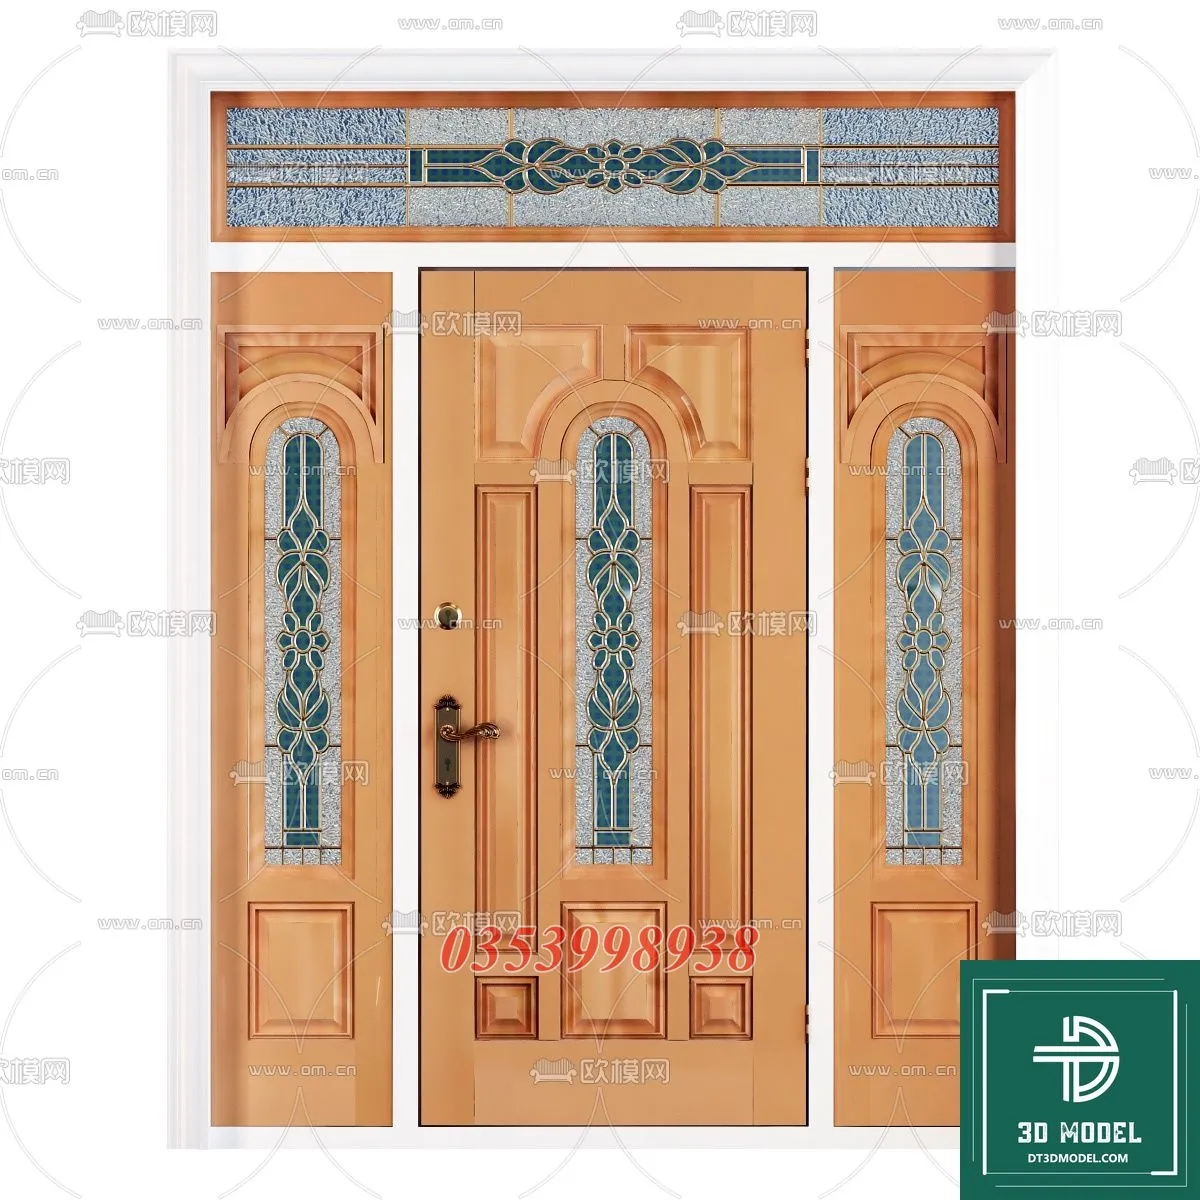 CLASSIC DOOR – 3dsmax MODELS – 004